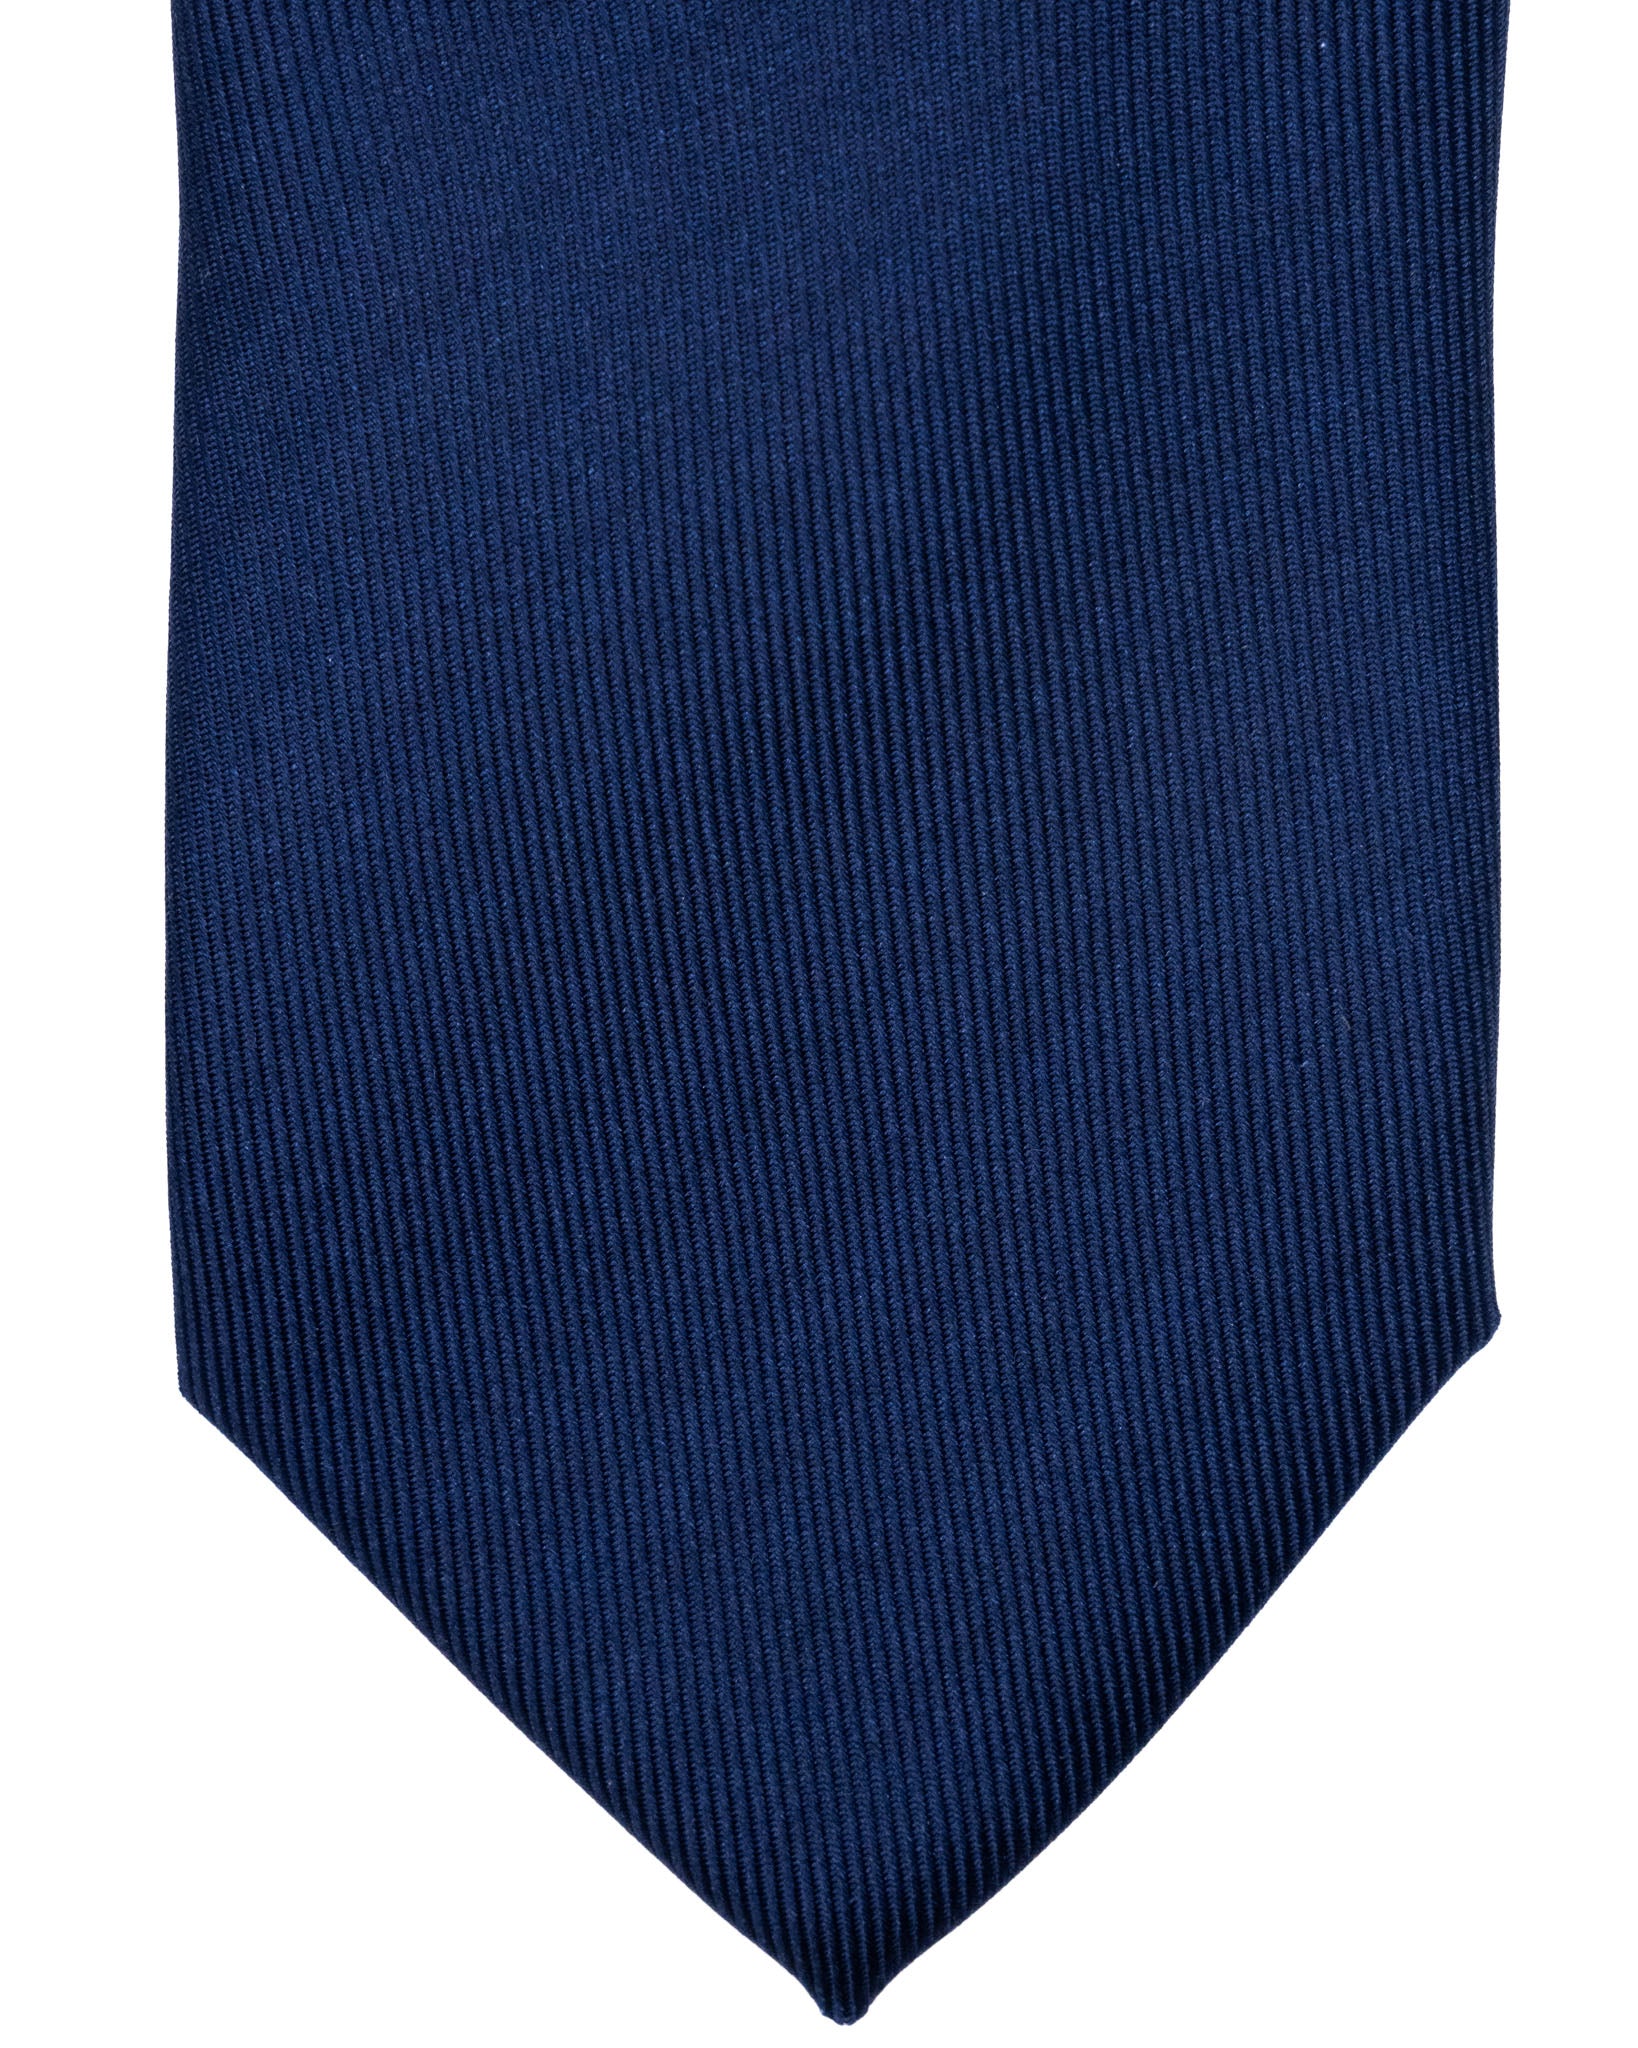 Cravatta - in seta twill blu navy